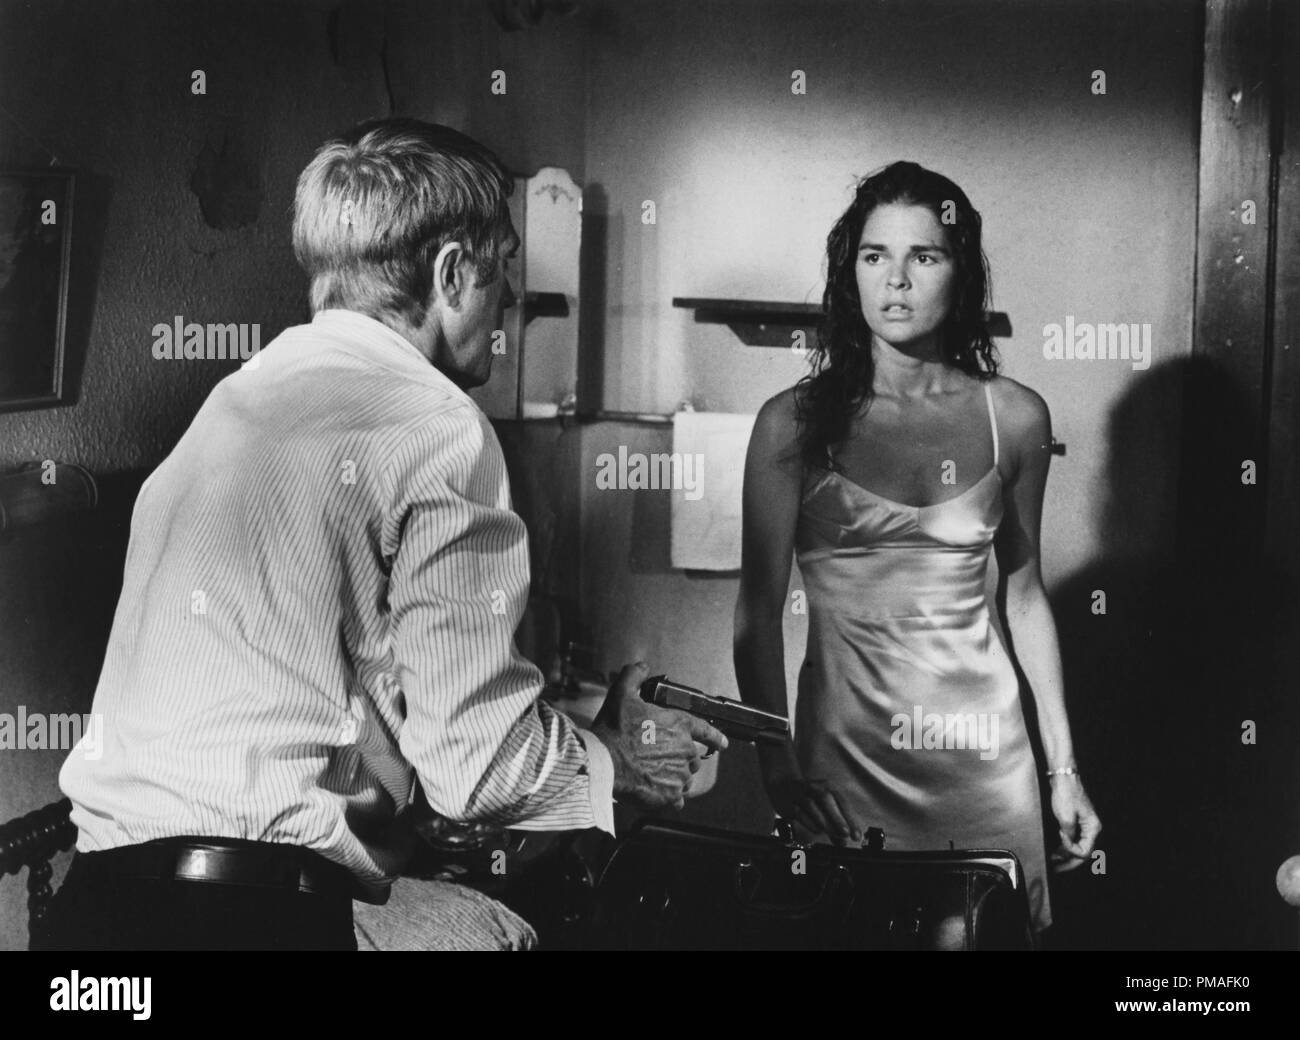 Steve McQueen und Ali MacGraw in 'The Getaway', 1972 Nationale Allgemeine Bilder Datei Referenz # 32633 664 THA Stockfoto